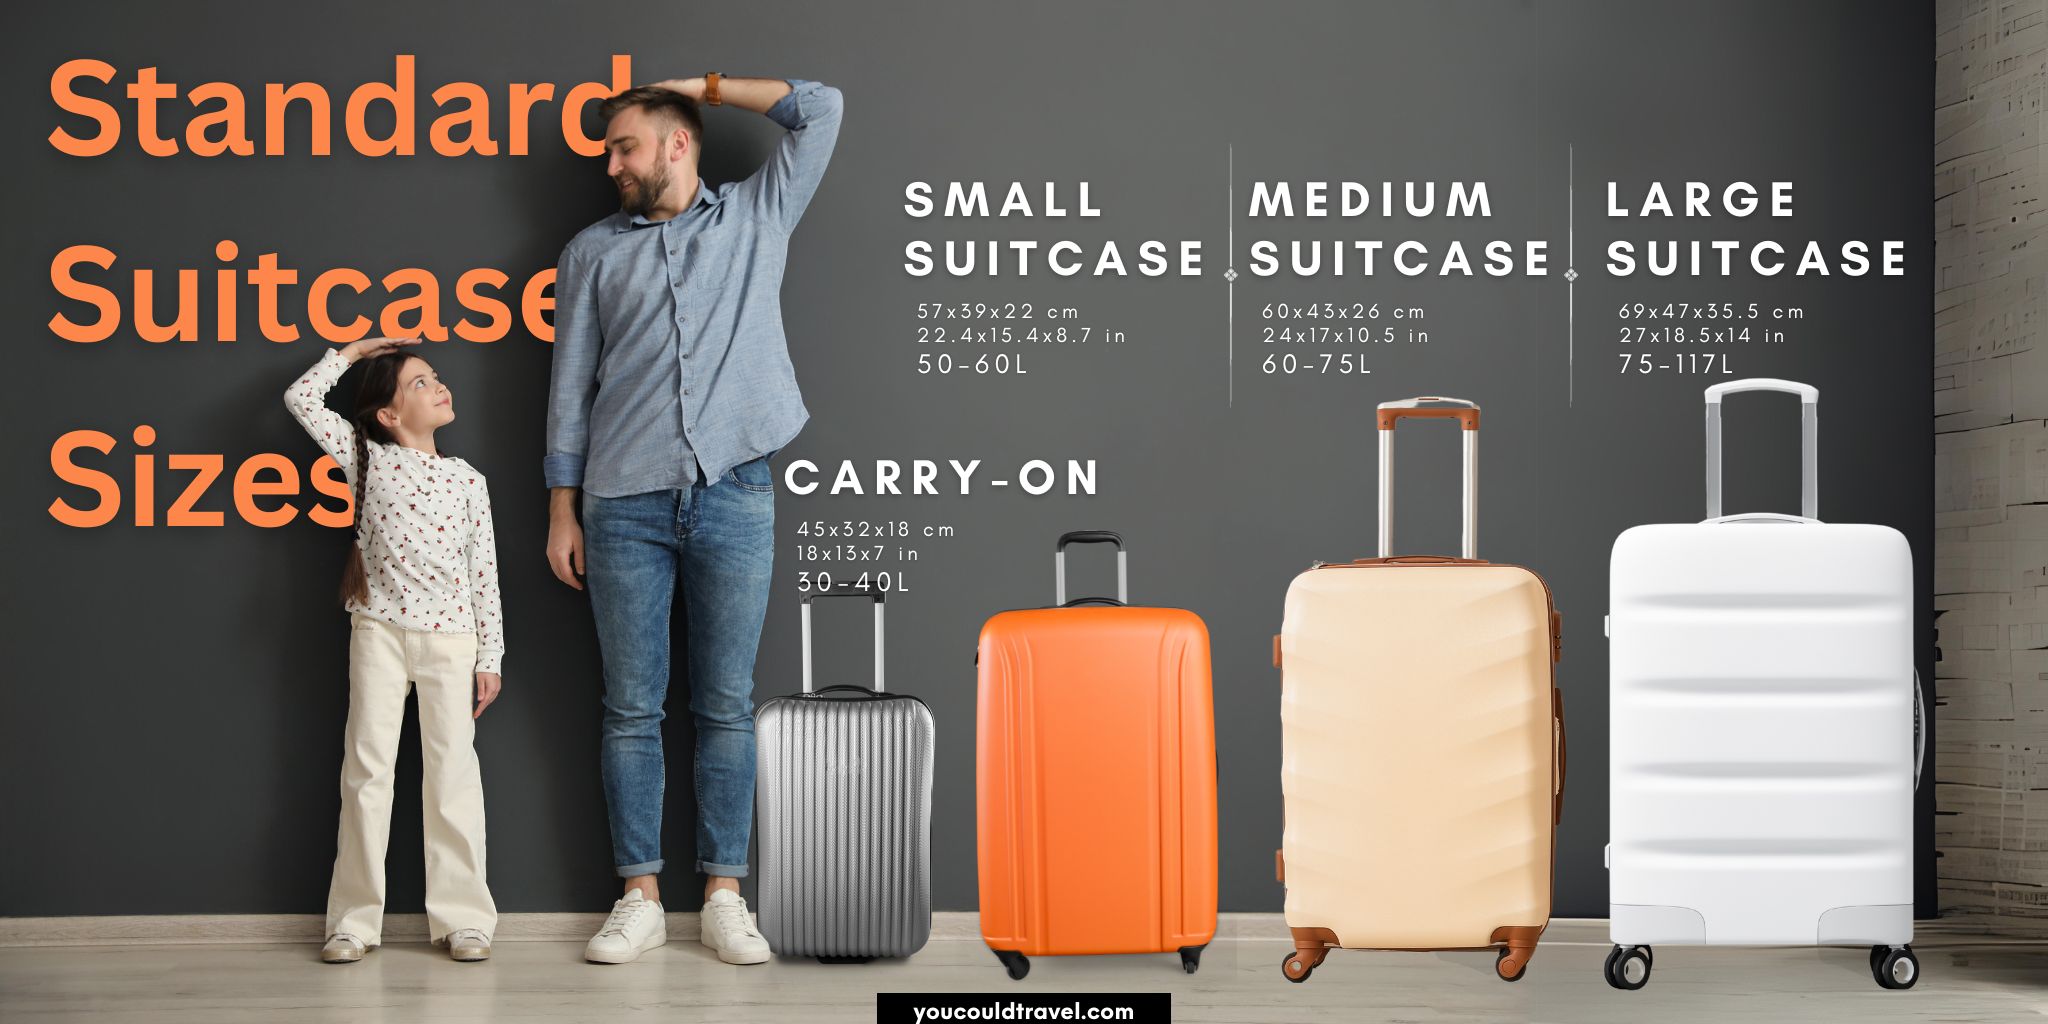 Standard Suitcase Sizes Comparison Chart